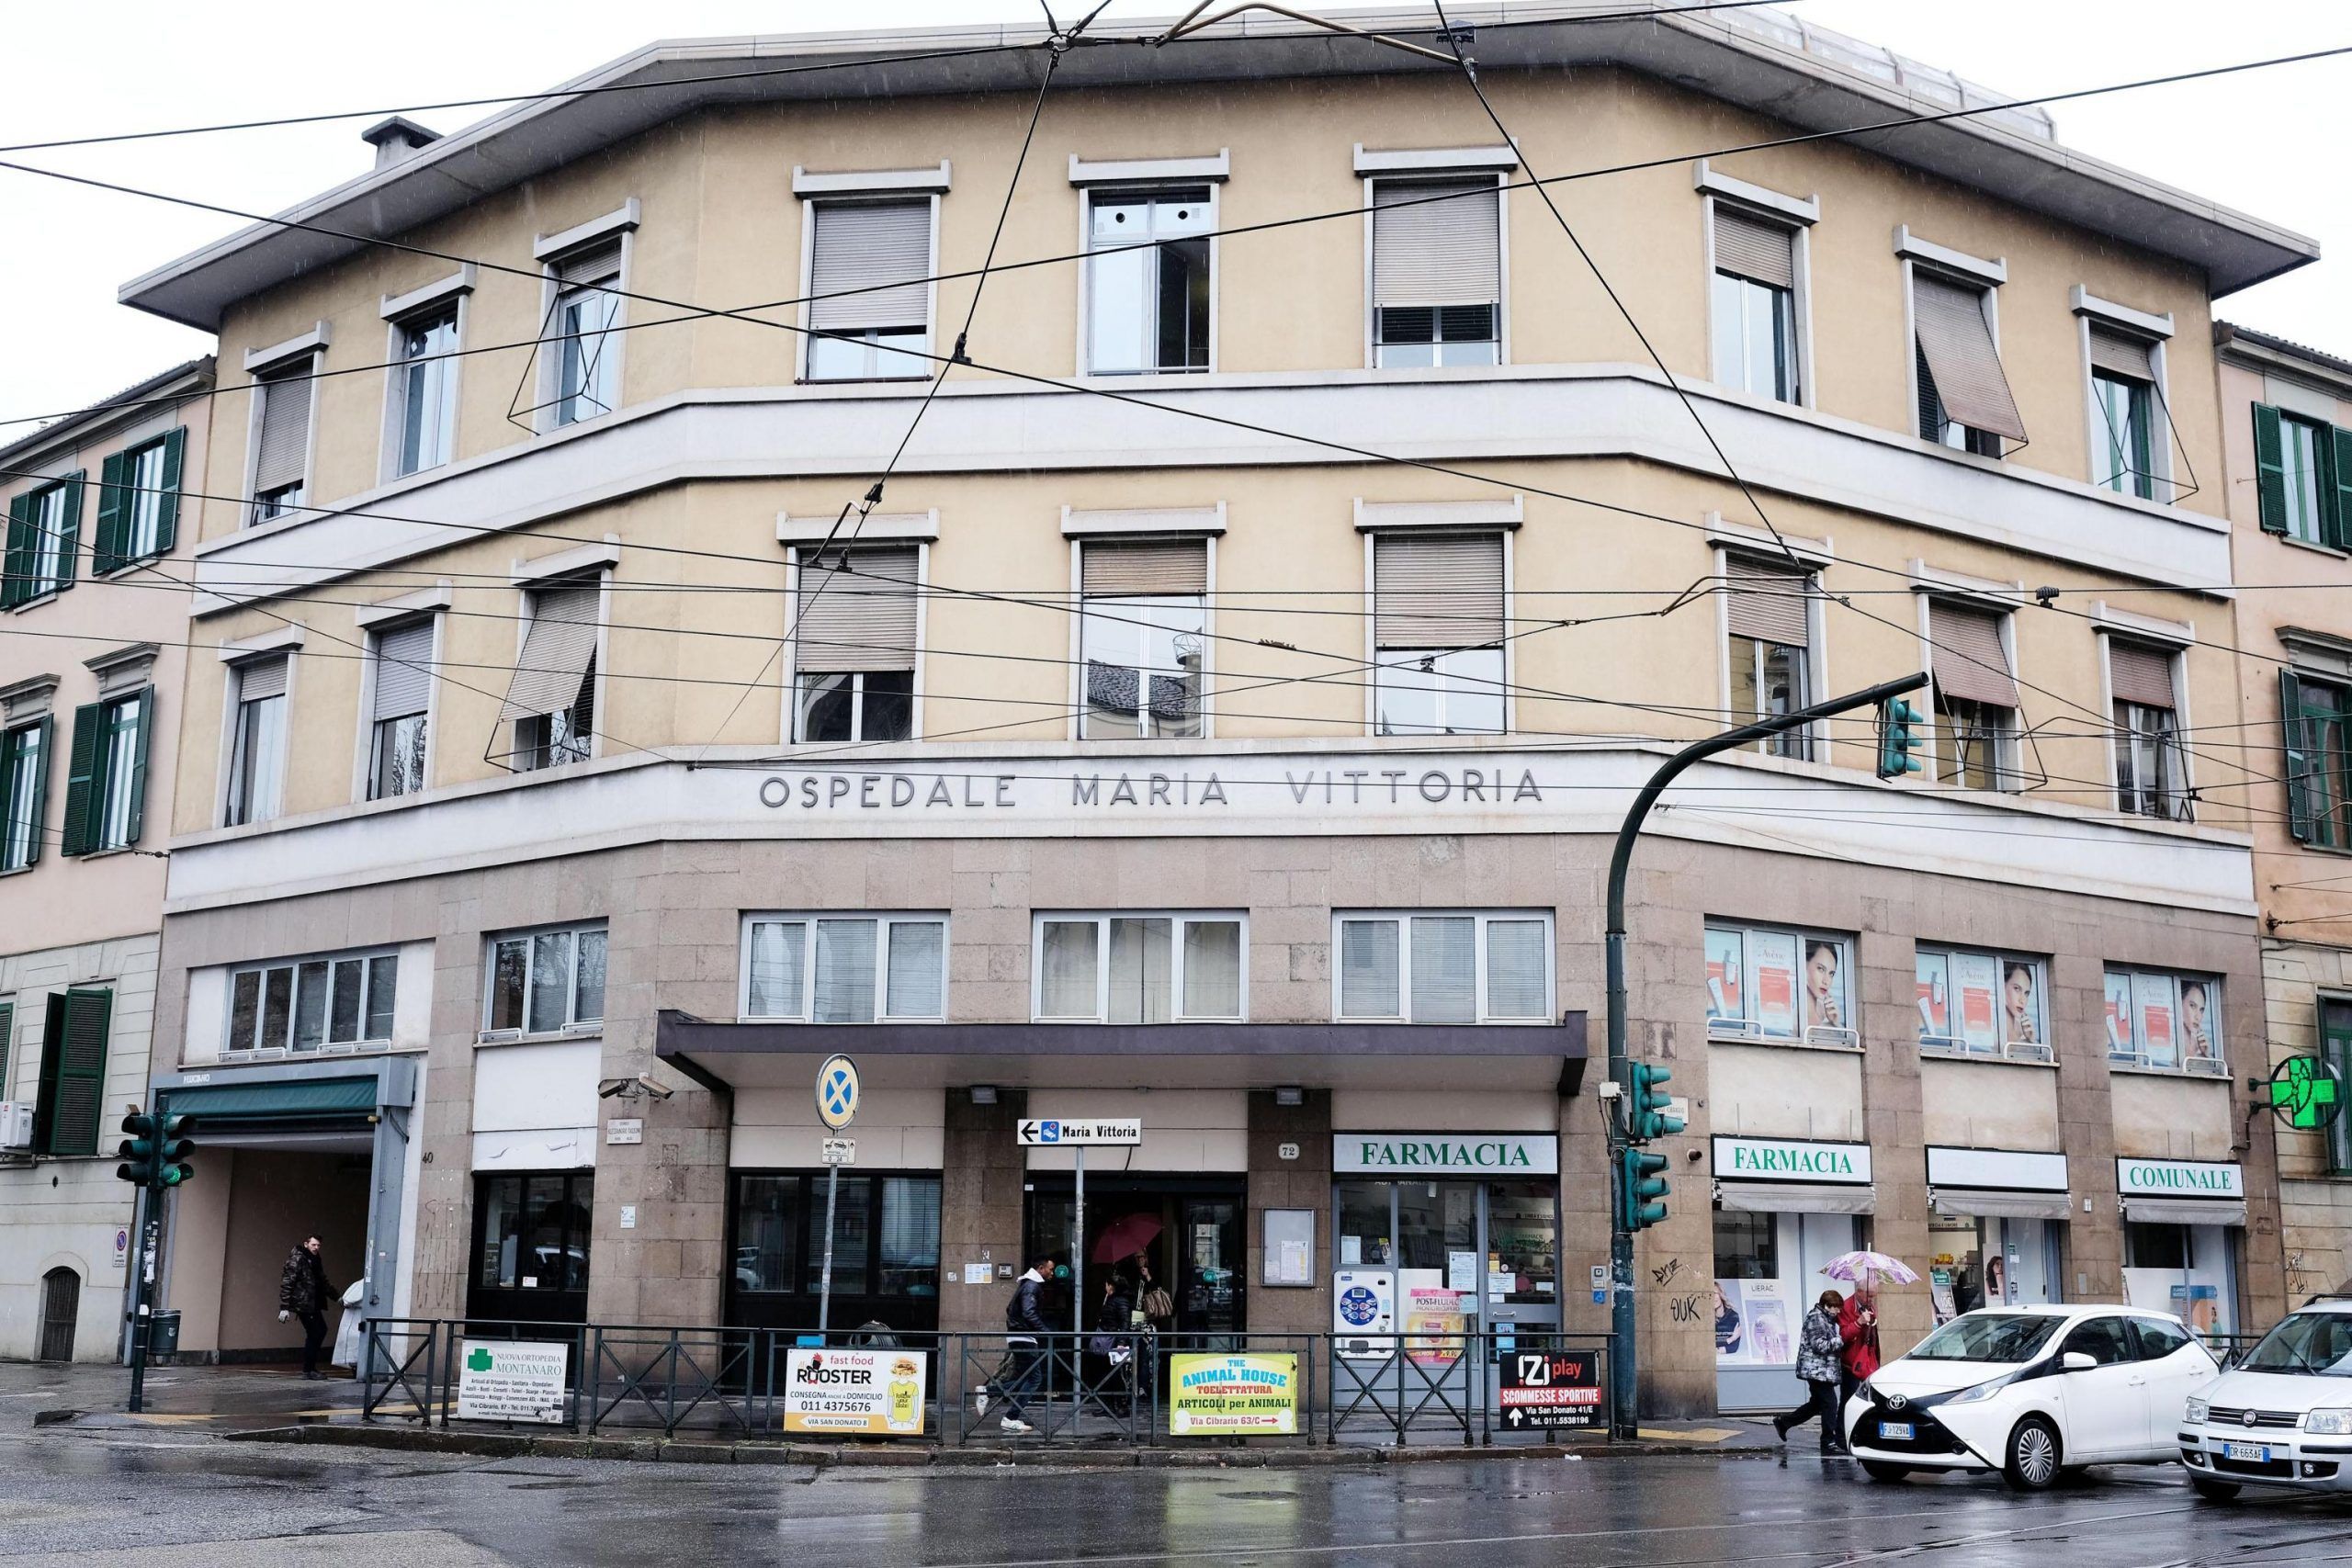 Laccio al collo nella sua stanza,12enne muore a Torino